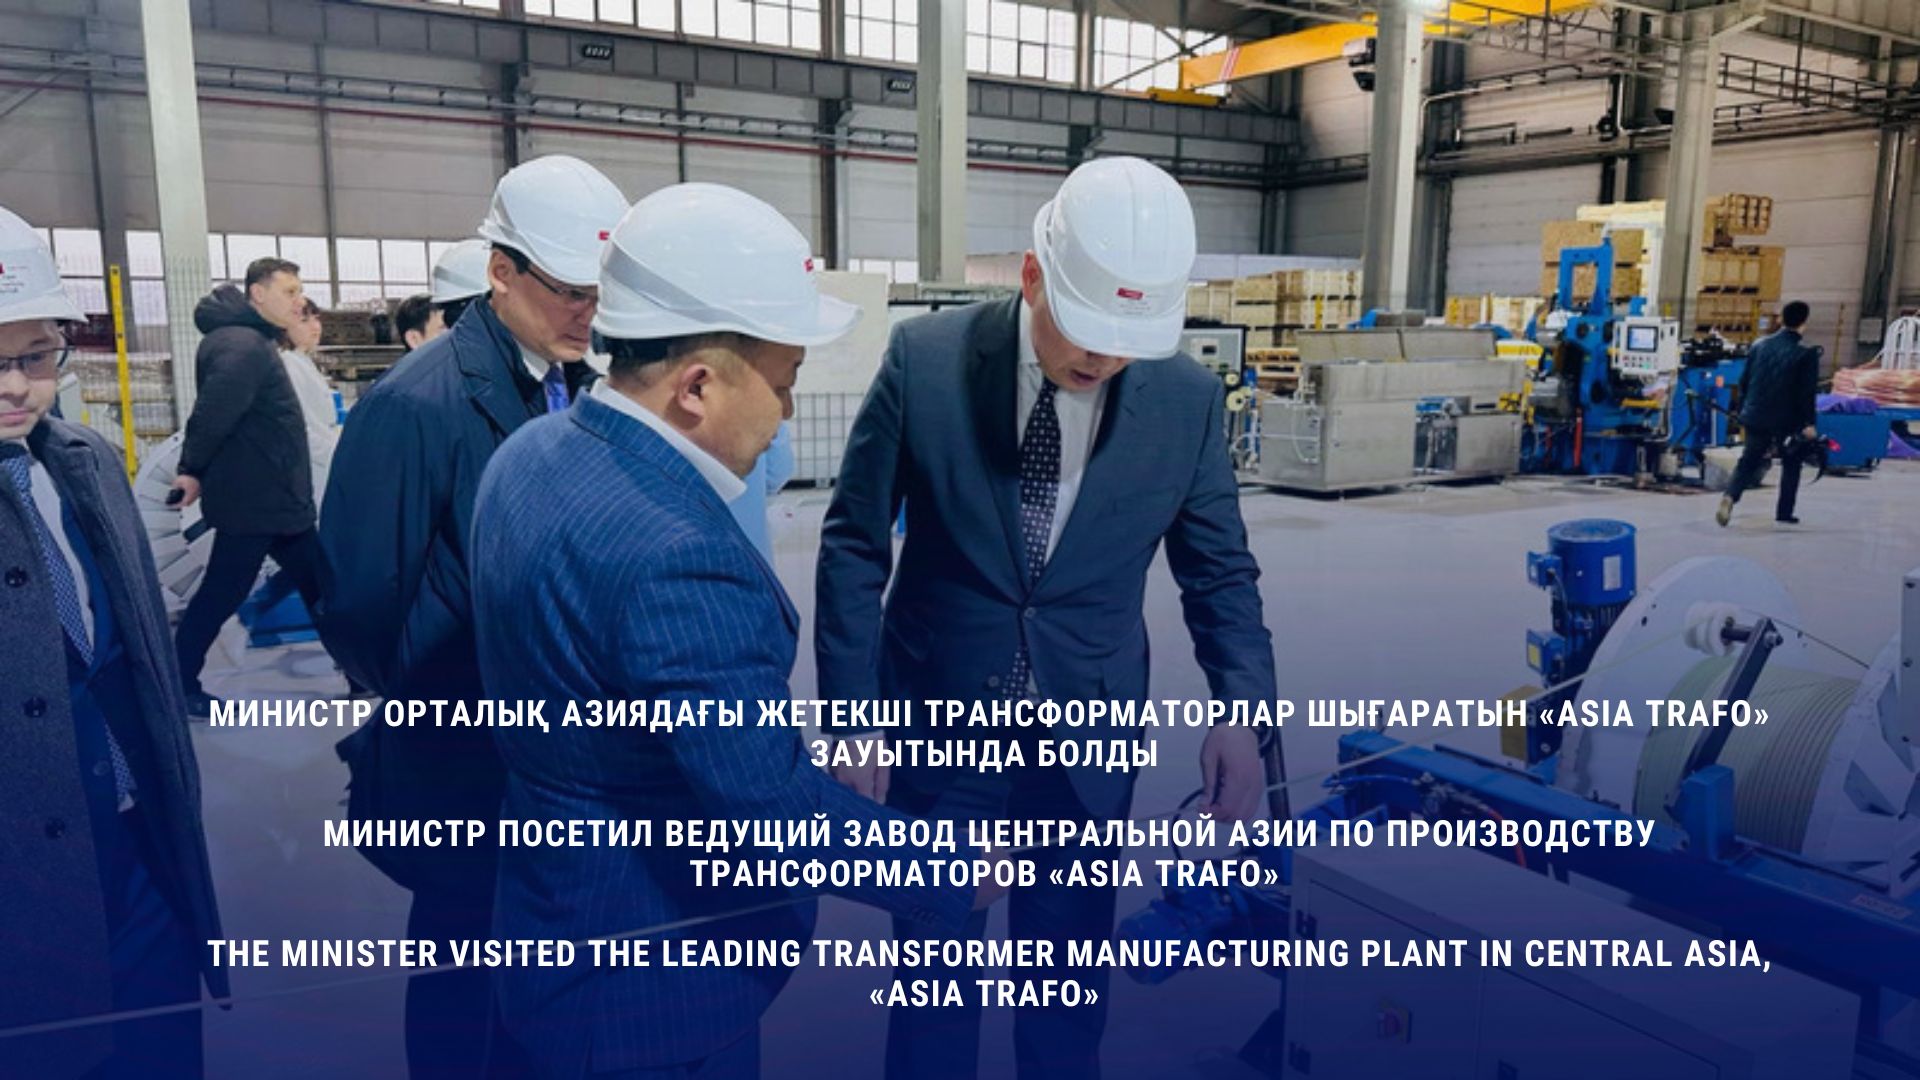 Министр посетил ведущий завод Центральной Азии по производству трансформаторов «Asia Trafo»